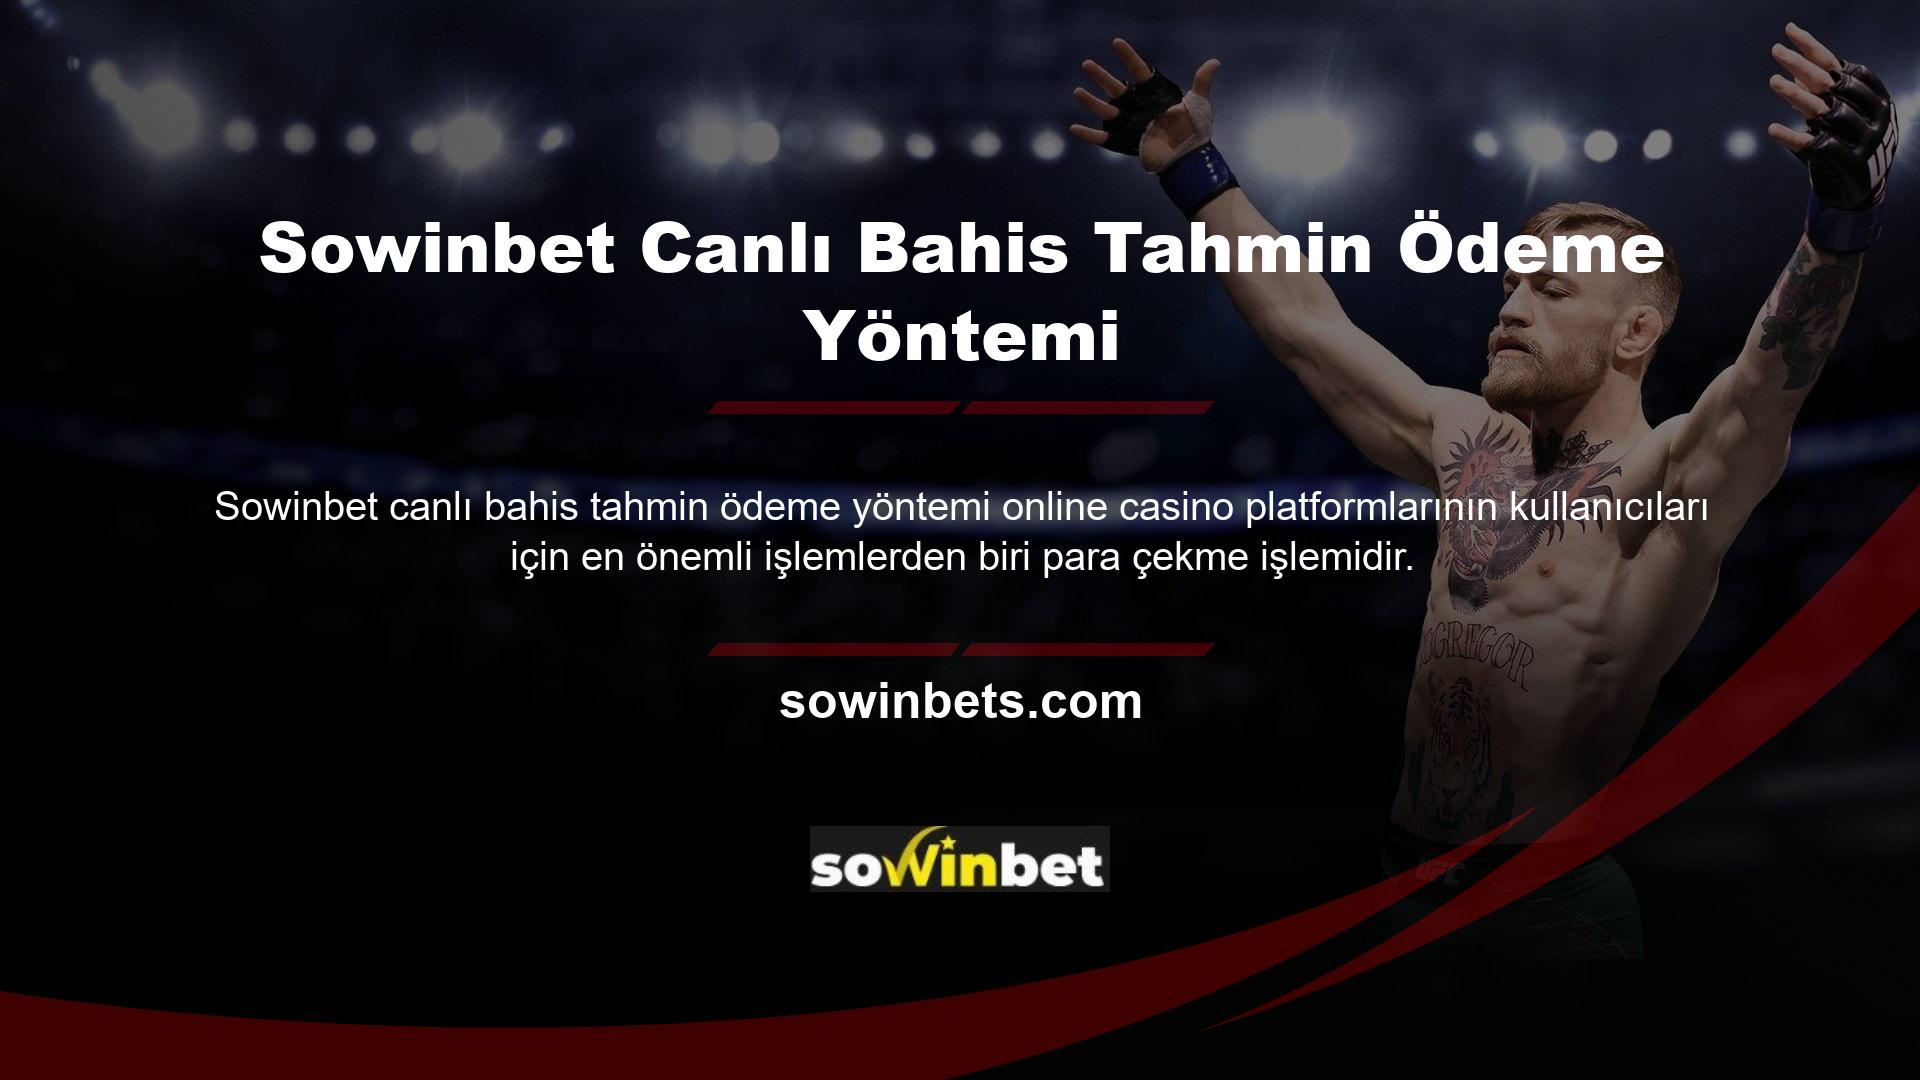 Çevrimiçi casino sitesi Sowinbet, para yatırma işlemleri kadar hızlı para çekme işlemini de garanti ediyor